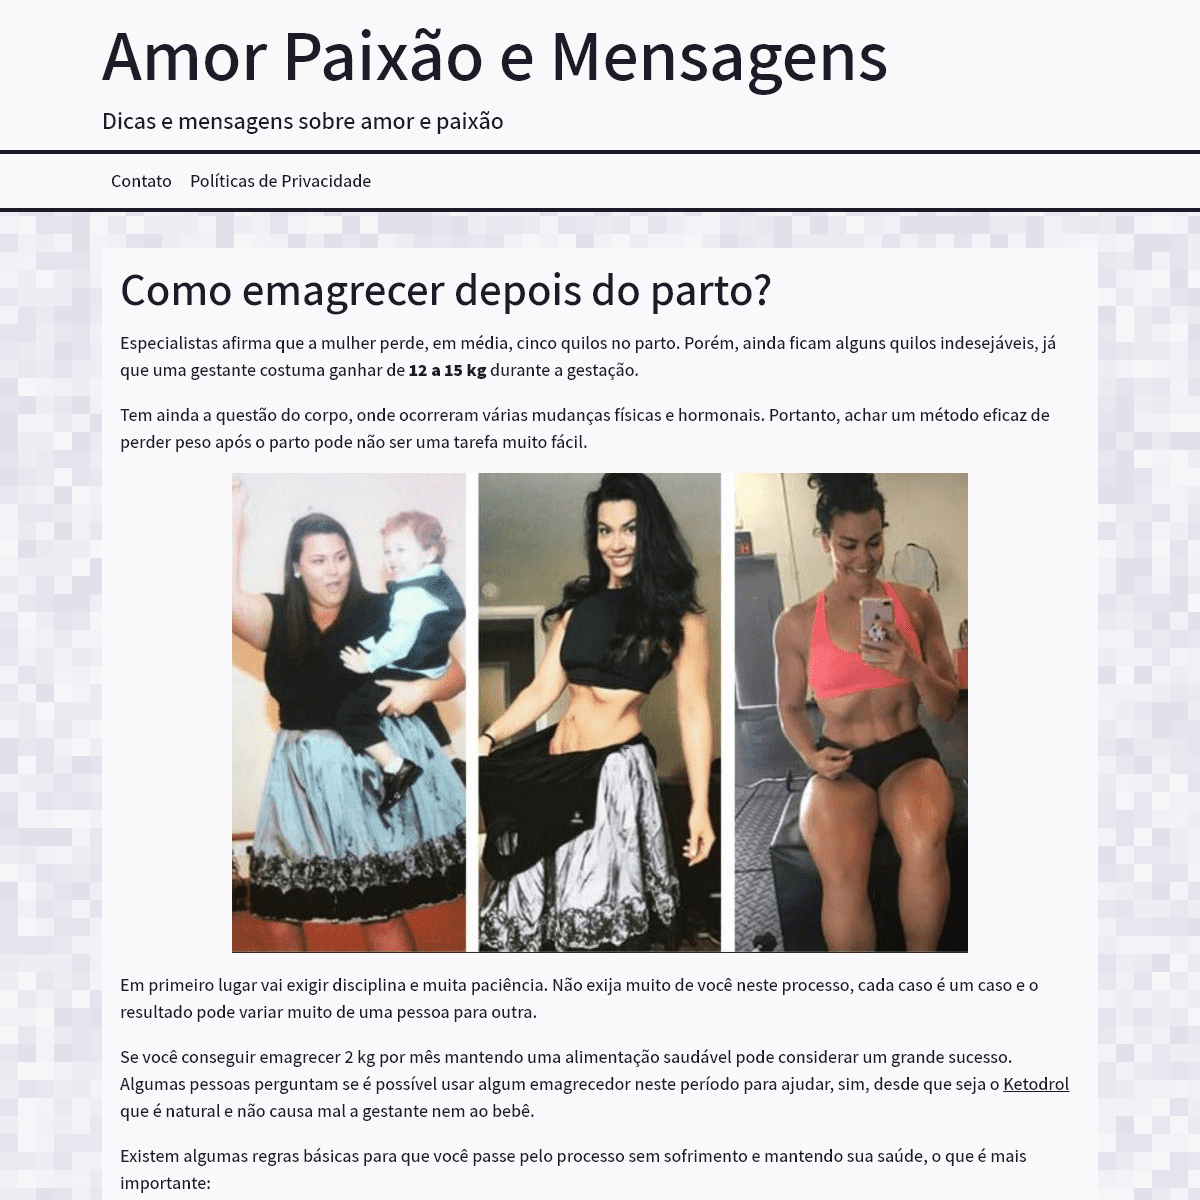 A complete backup of amorepaixaomensagens.com.br